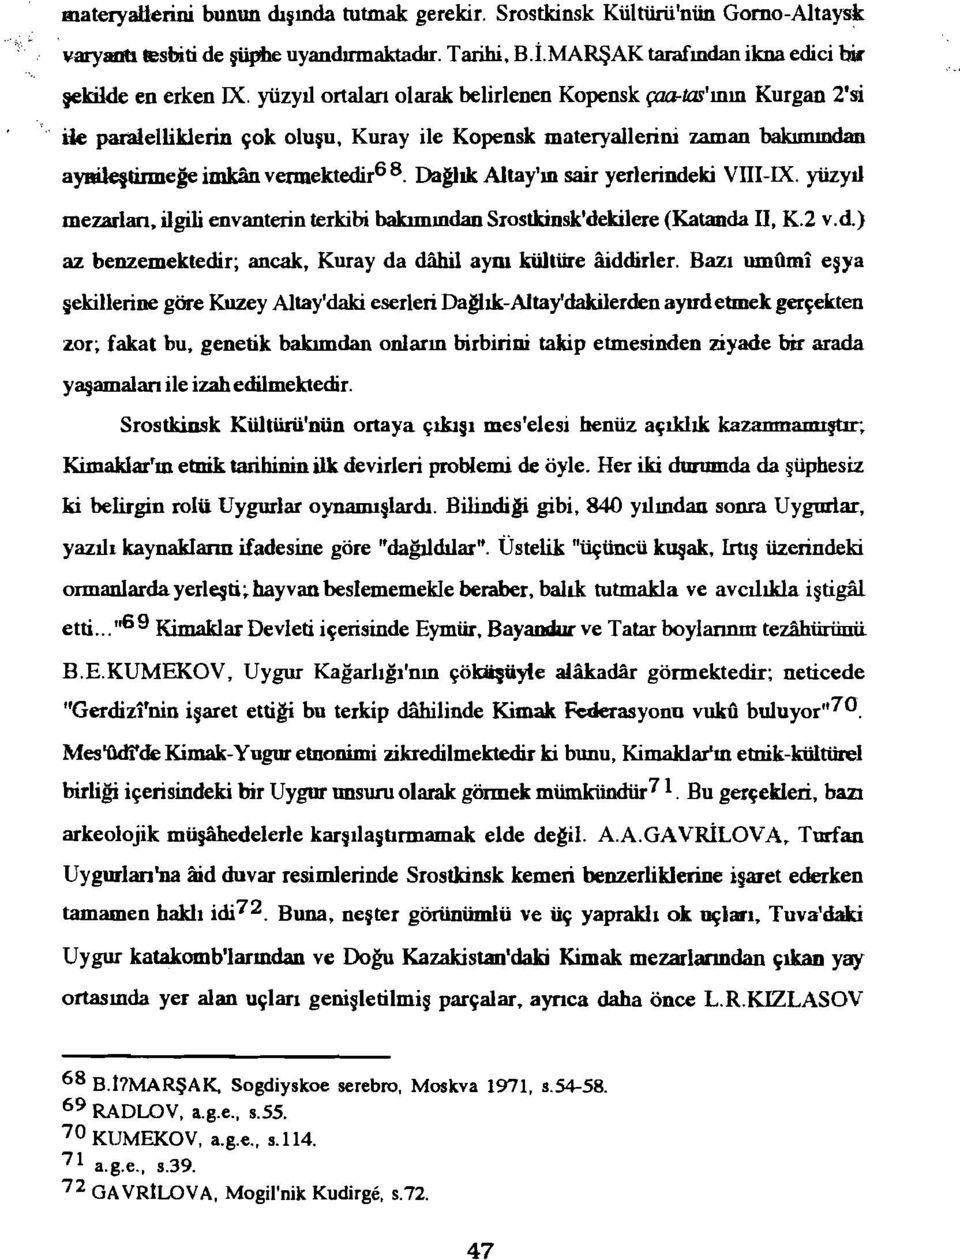 Dağlık Altay'ın sair yerlerindeki VTII-IX. yüzyıl mezarlan, ilgili envanterin terkibi bakımından Srostkinsk'dekilere (Katanda II, K.2 v.d.) az benzemektedir; ancak, Kuray da dahil aym kültüre aiddirler.